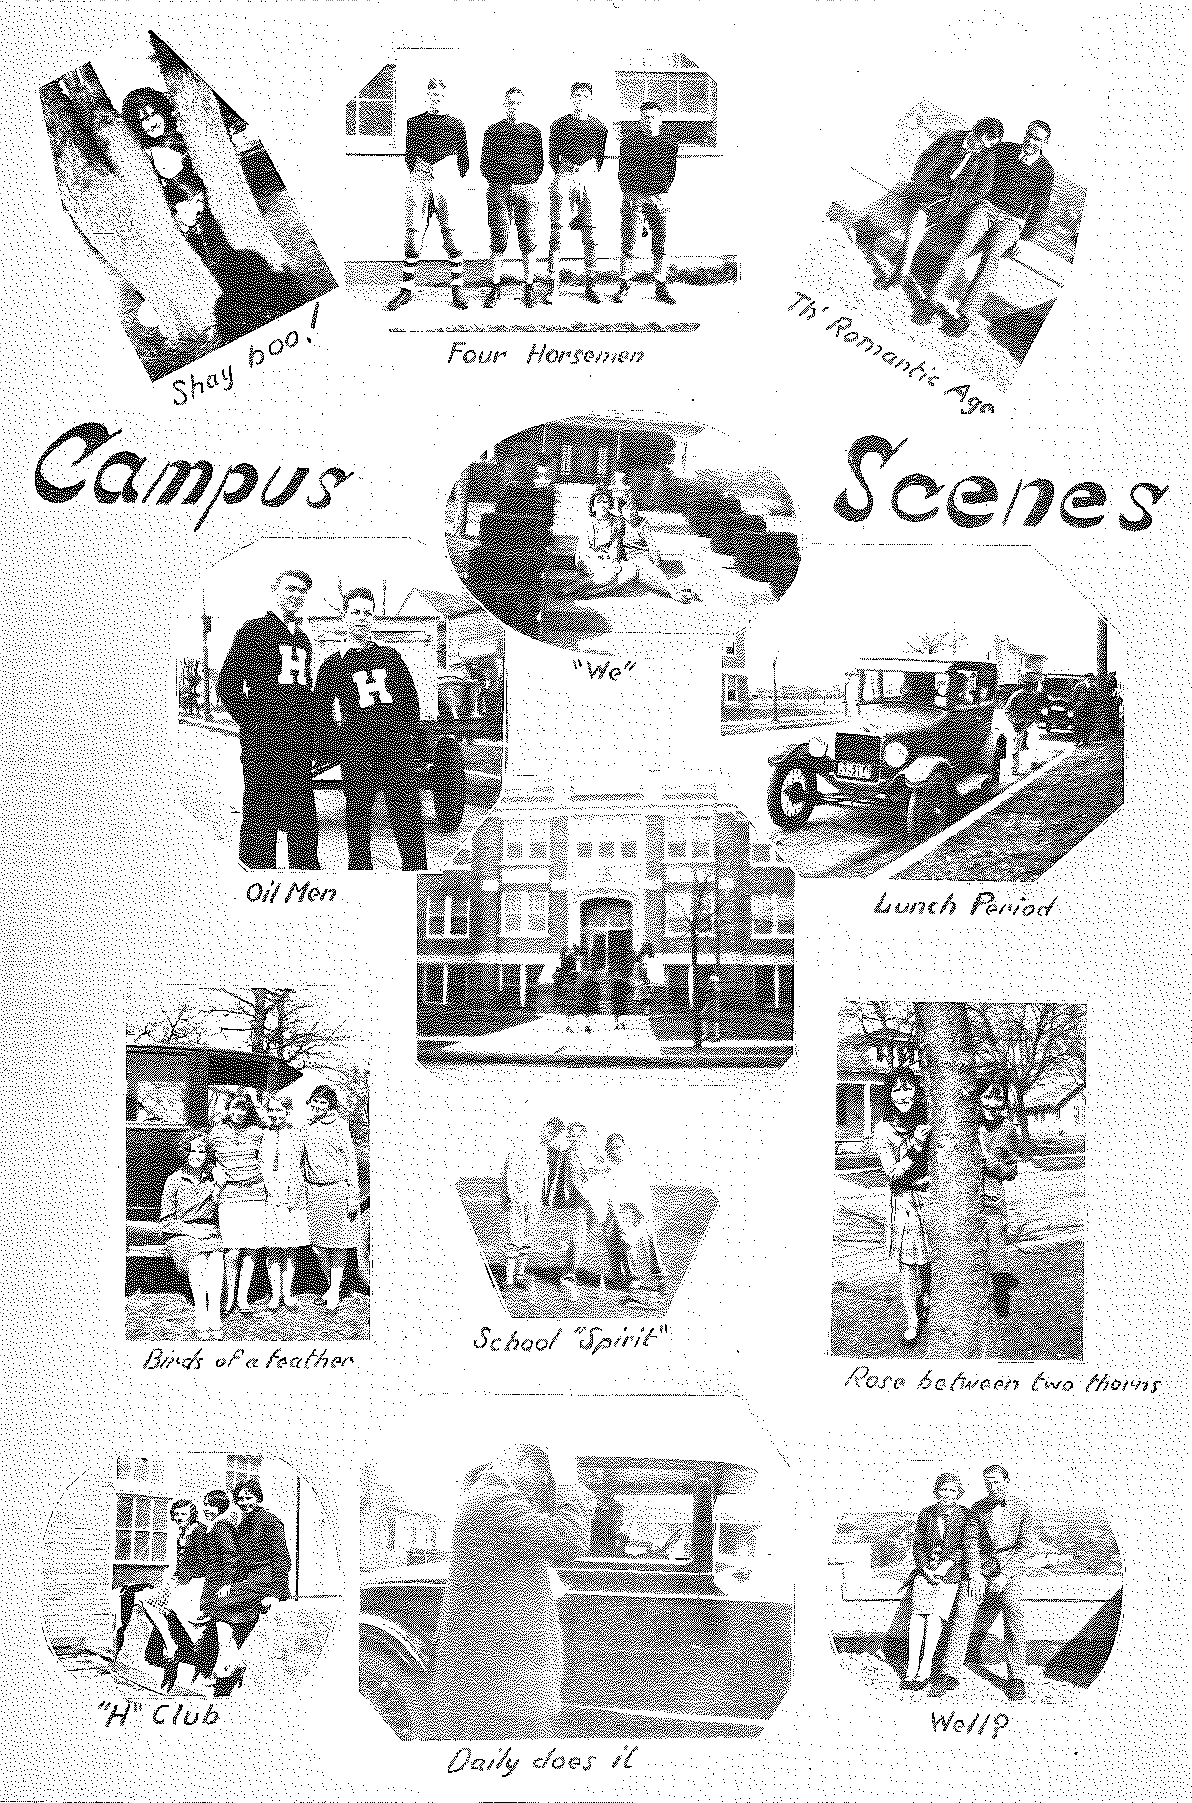 1928 Campus Scenes